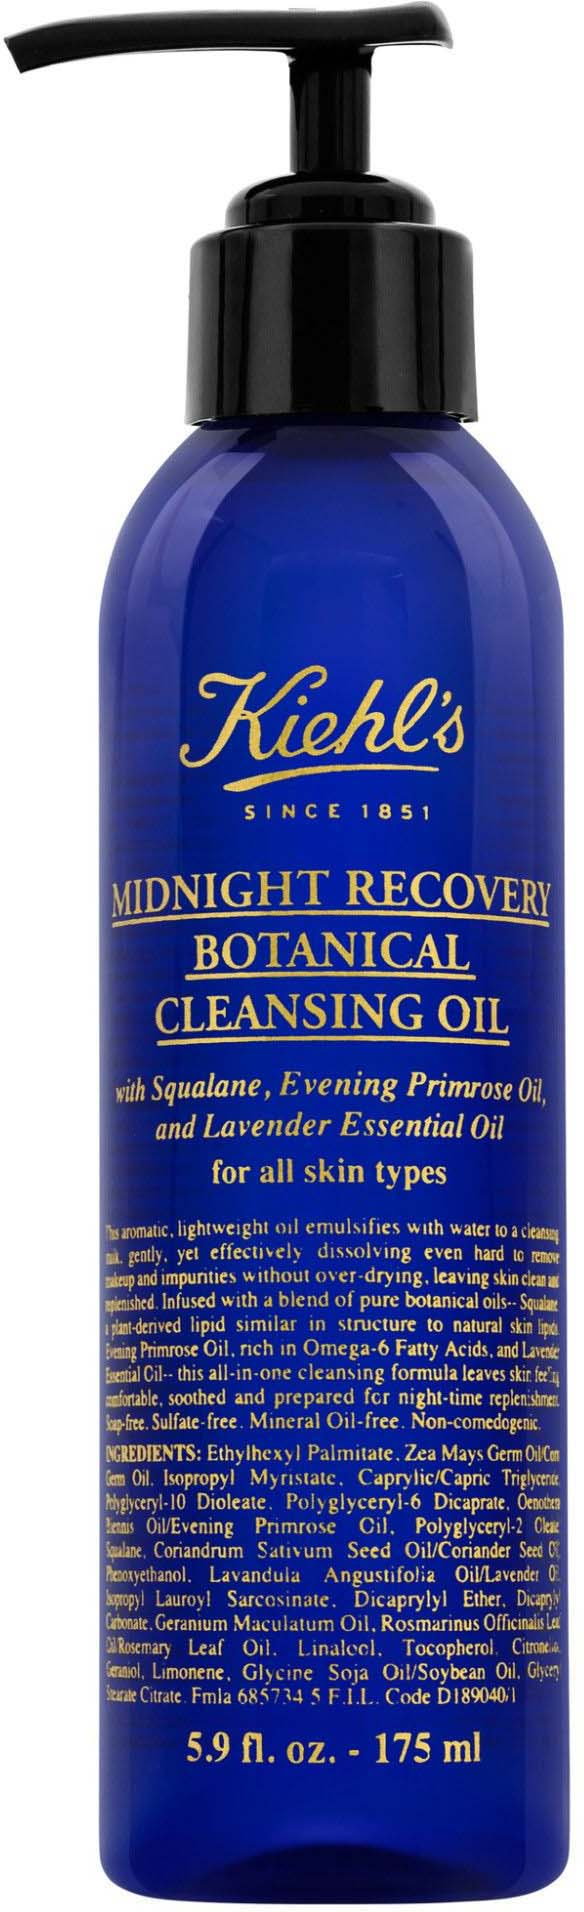 Midnight Recovery Botanical Cleansing Oil - Botaniczny olejek oczyszczający